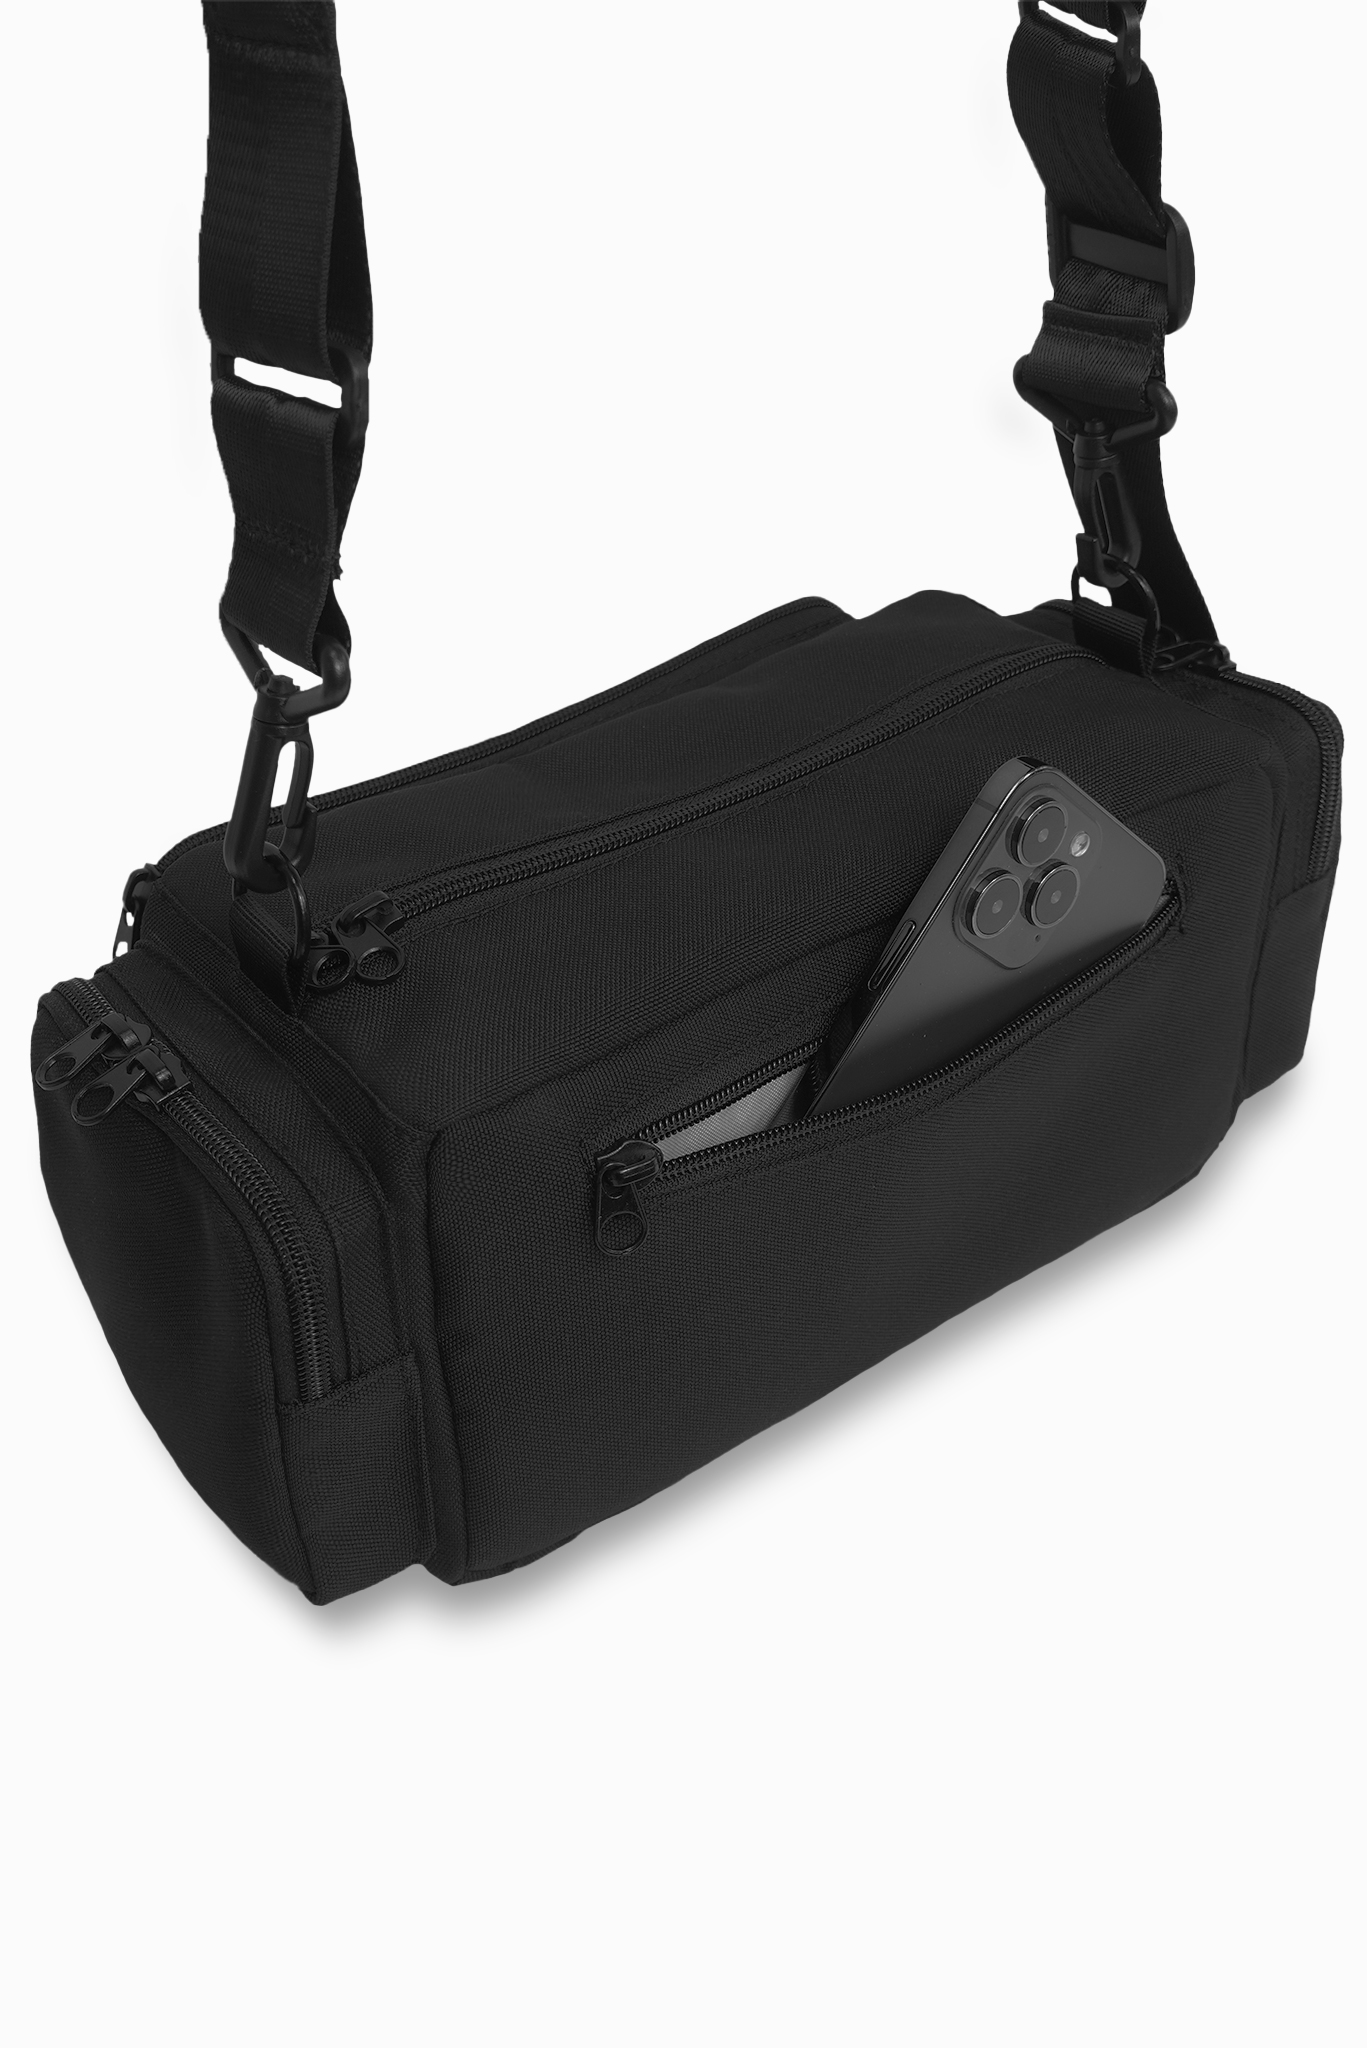 Túi đeo chéo chống sốc saigonswagger SGS DRUM COVERING BAG